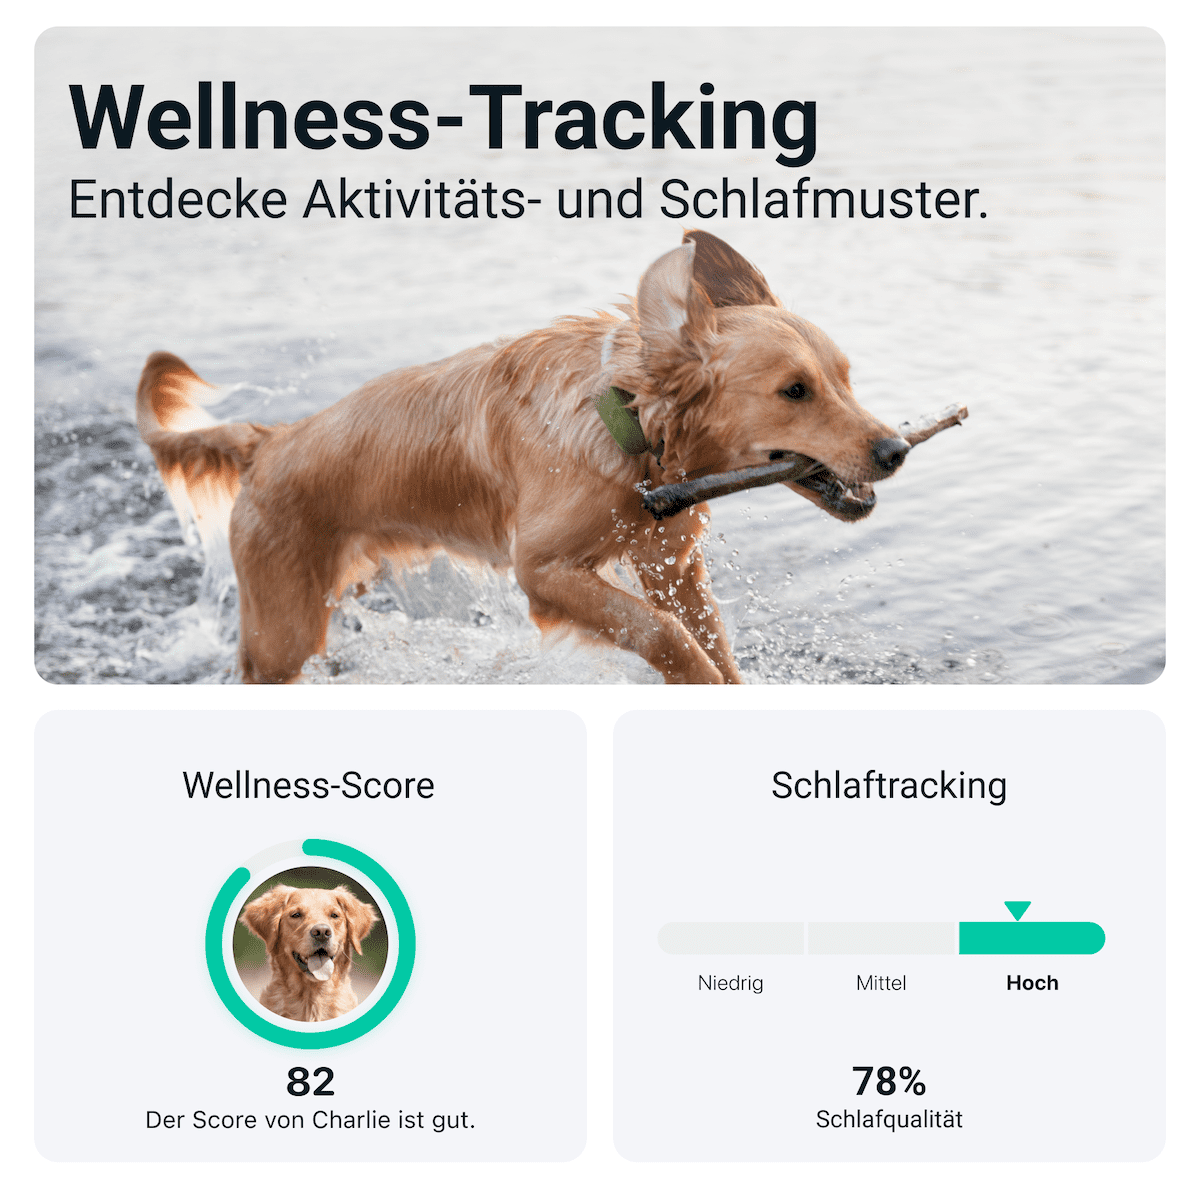 GPS Tracker XL für Hunde